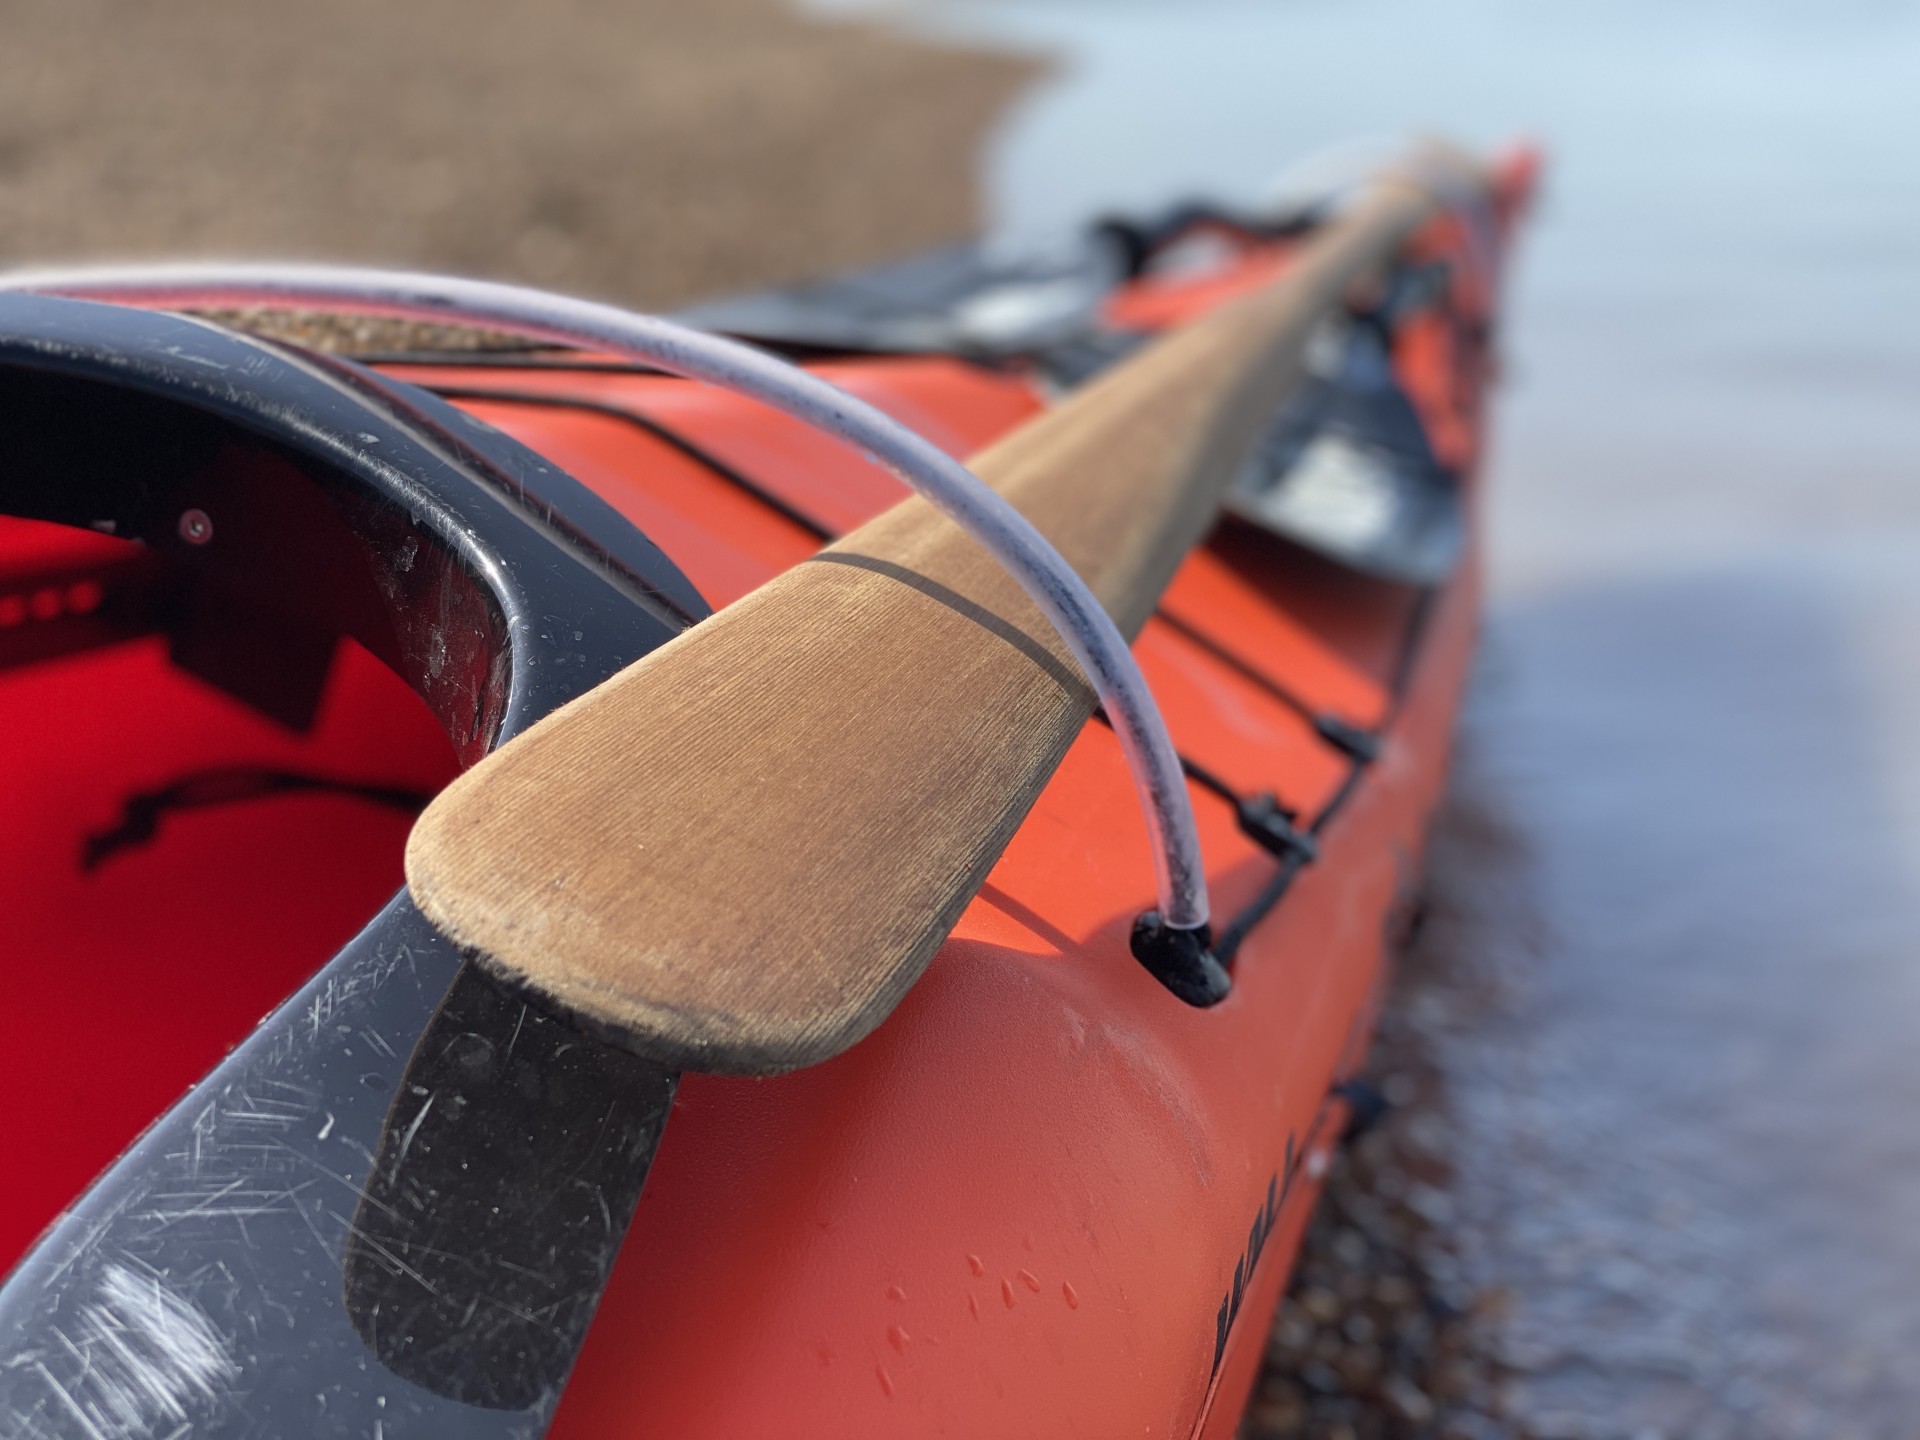 Greenland paddle on an orange sea kayak.